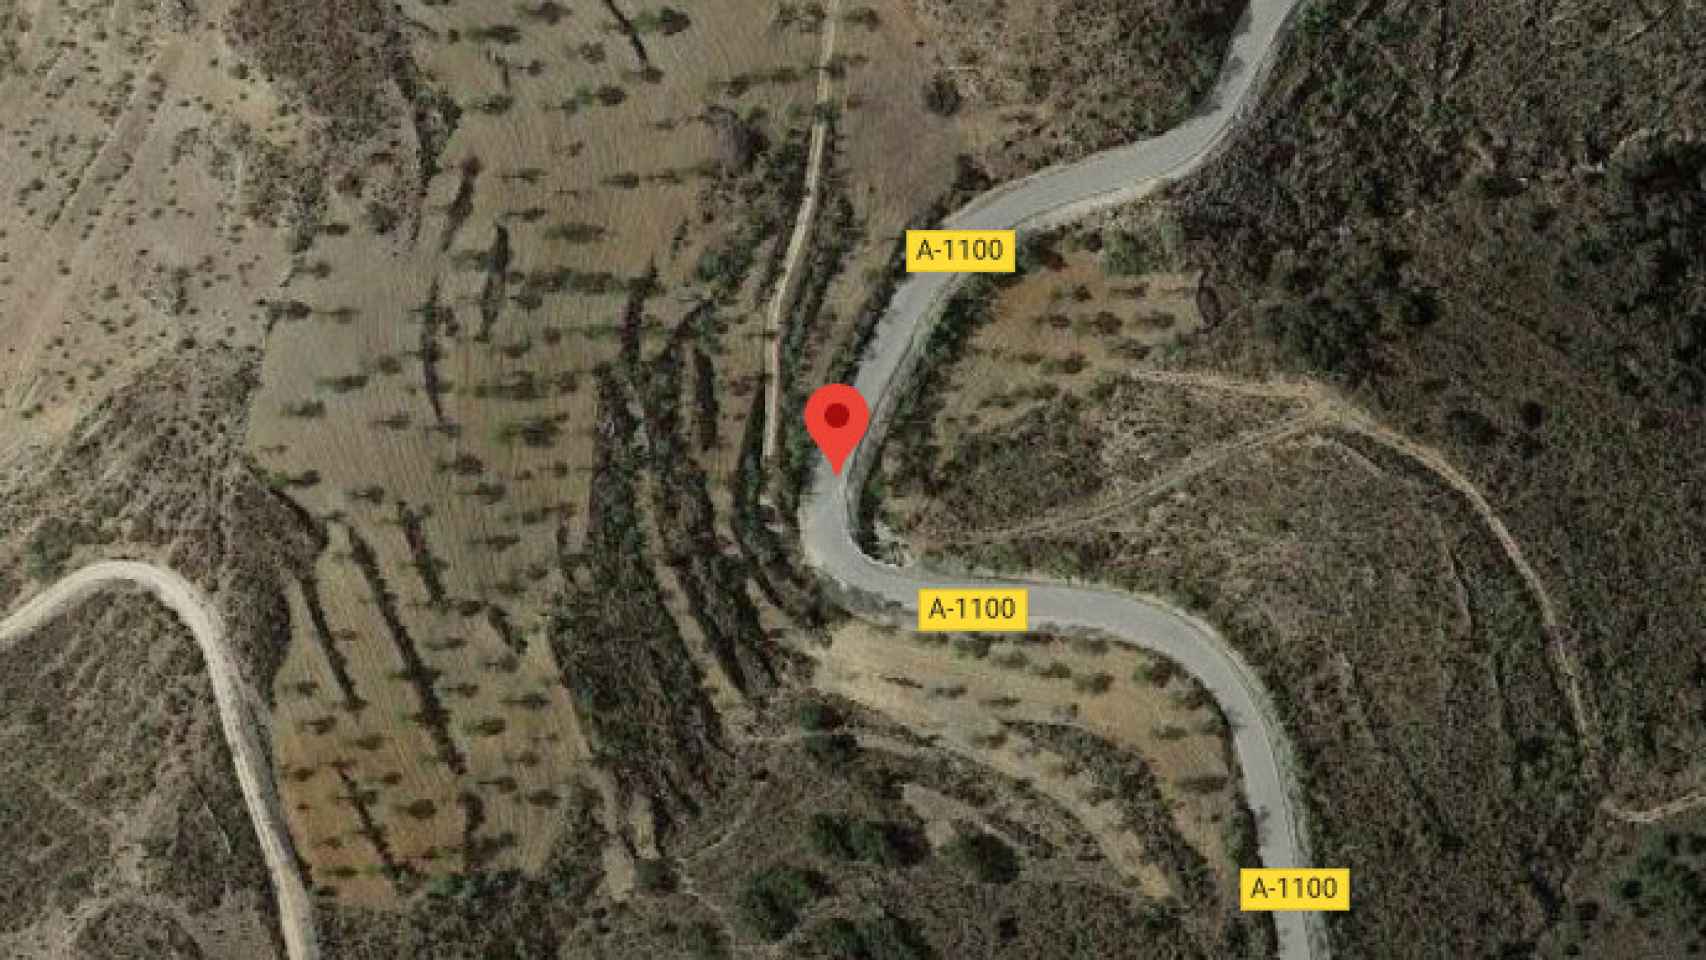 Vista aérea de Google de la carretera A-1100 que une Almanzora y Cantoria donde se produjo el siniestro donde murieron los dos adolescentes.